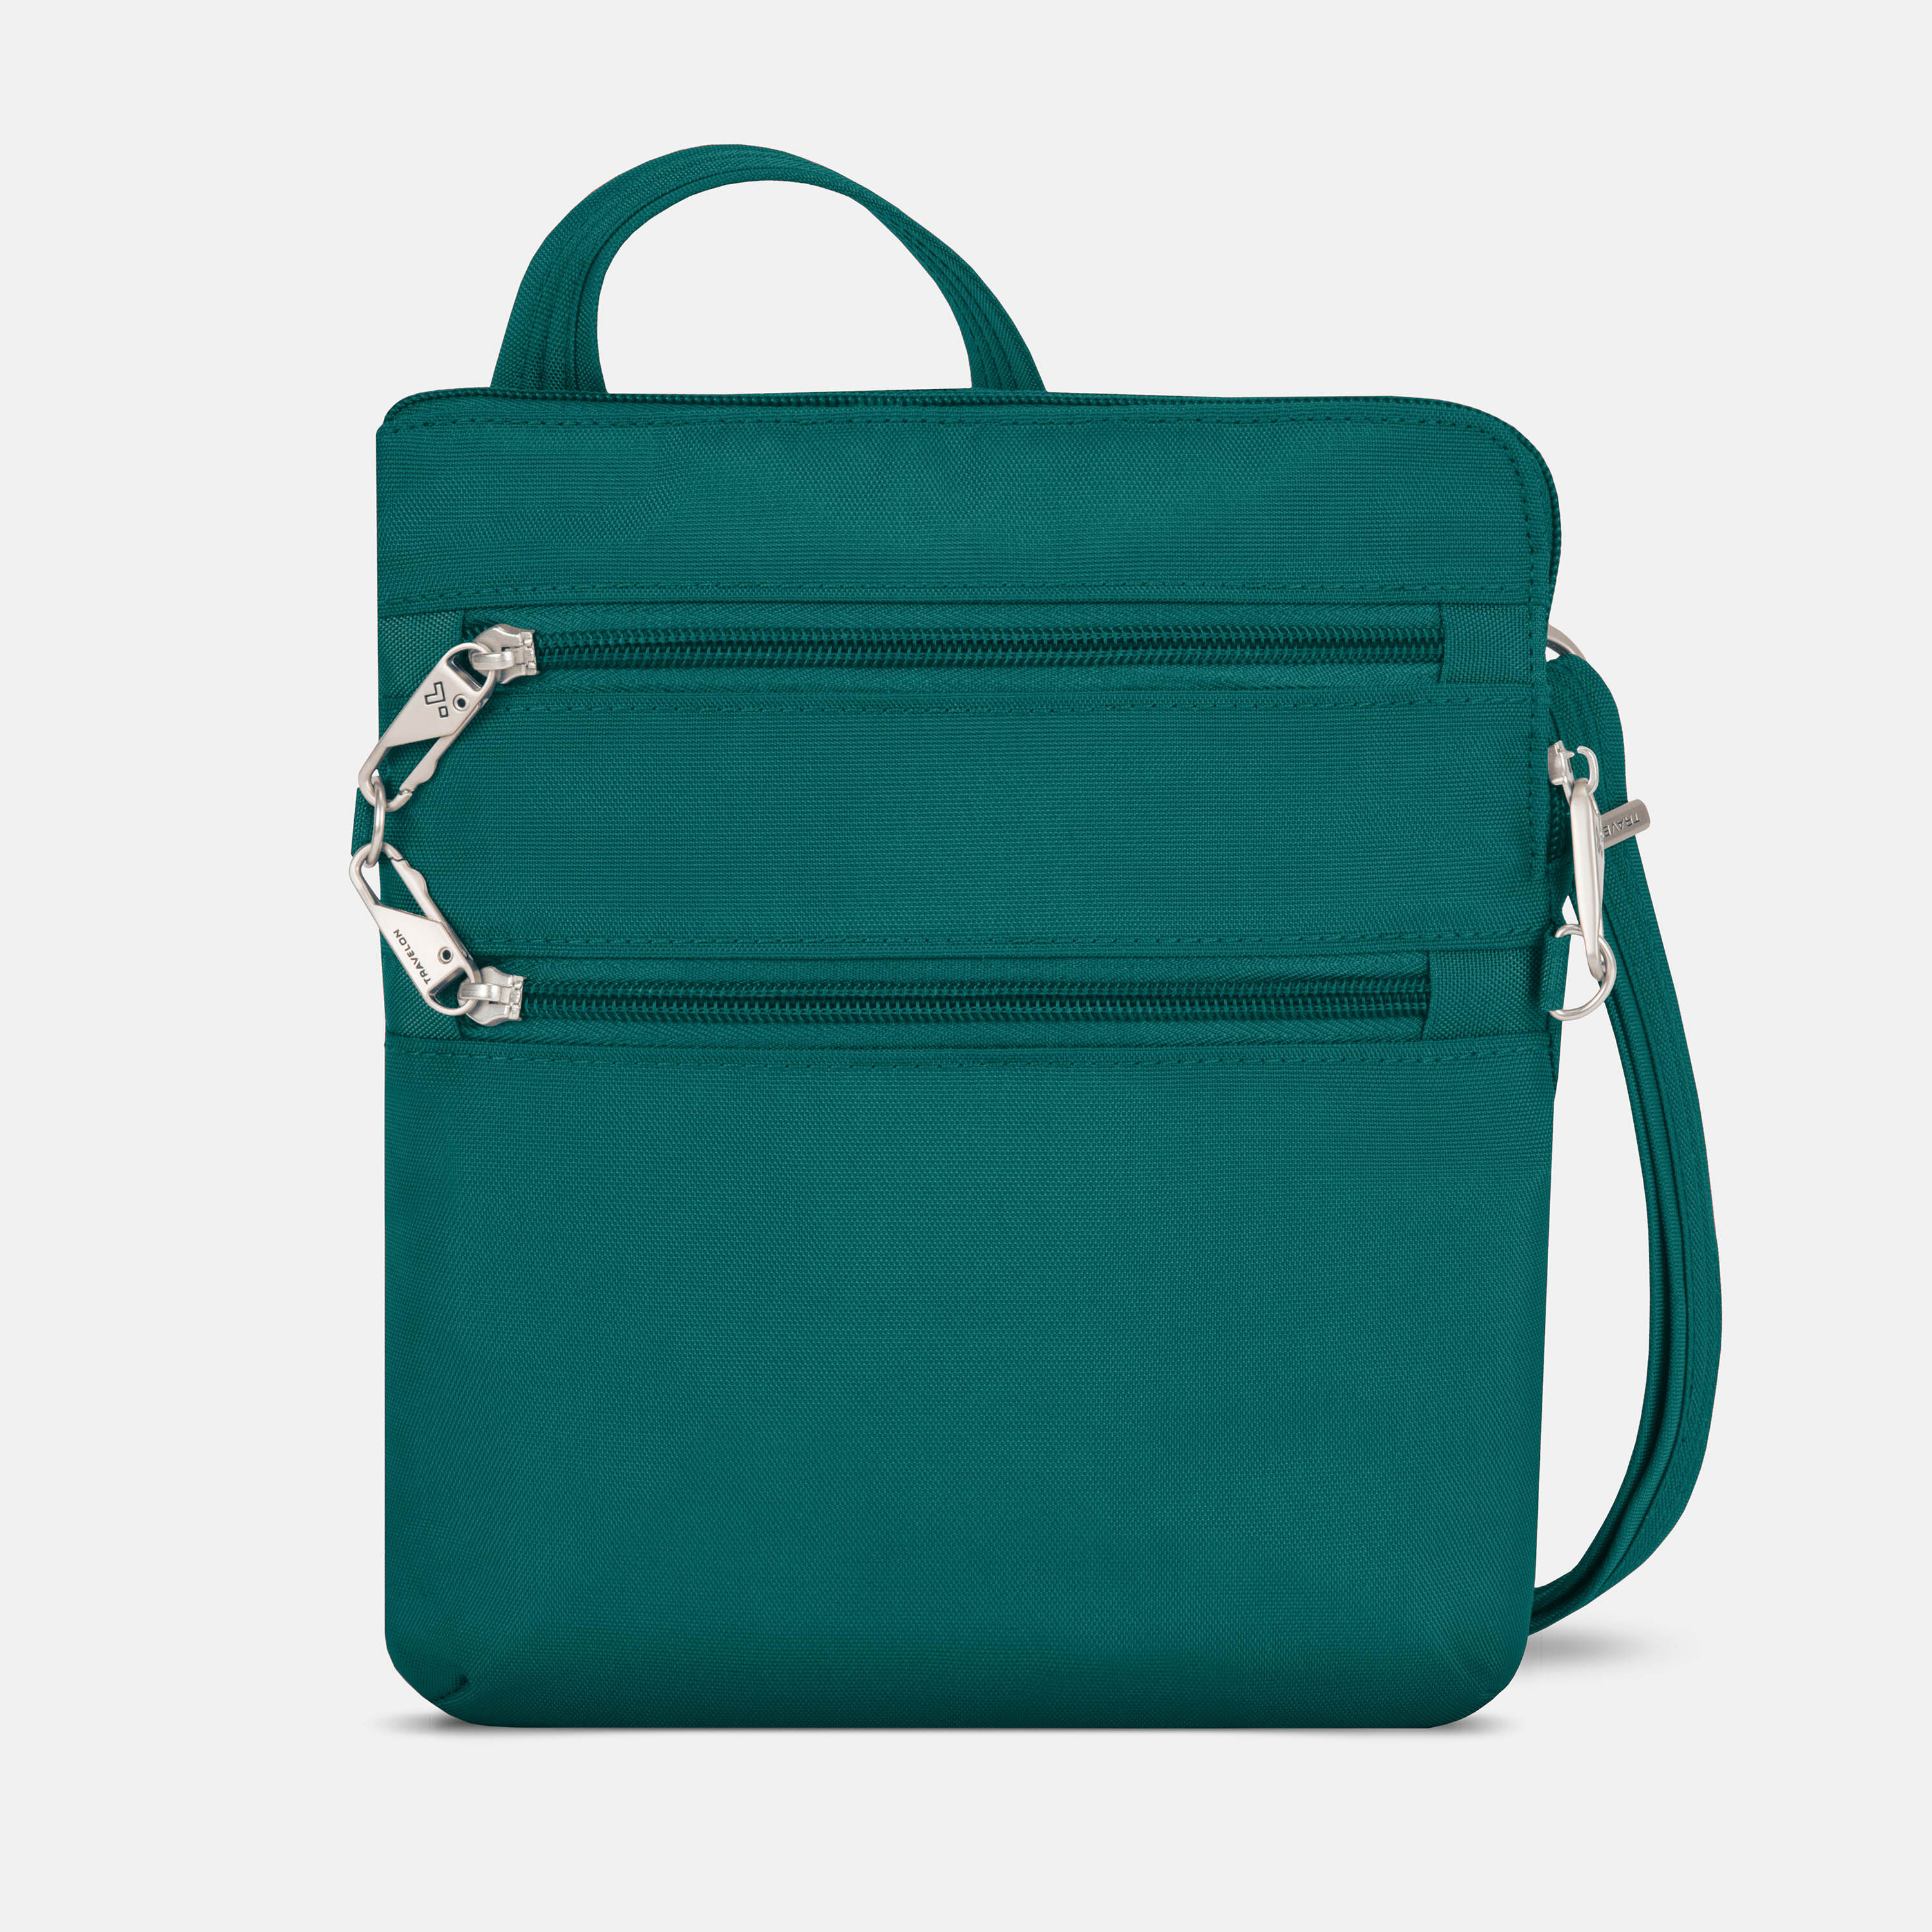 Cute Lladies Mini Crossbody Purse Green Shoulder Bag – igemstonejewelry